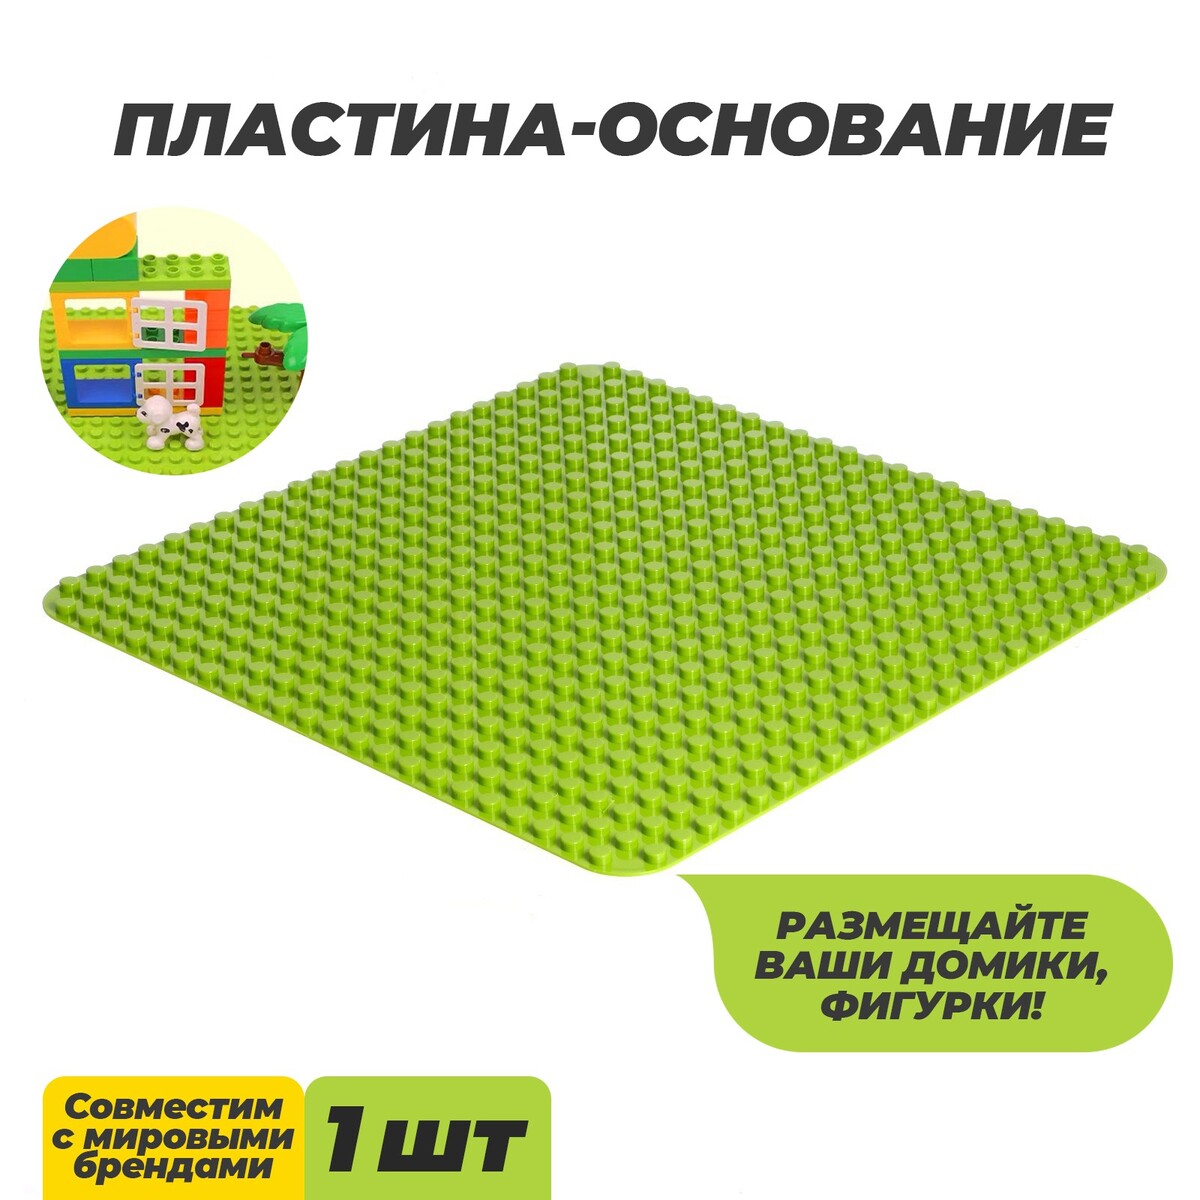 Пластина-основание для конструктора, 38,4 × 38,4 см, цвет салатовый пластина основание для конструктора 27 × 38 5 см салатовый